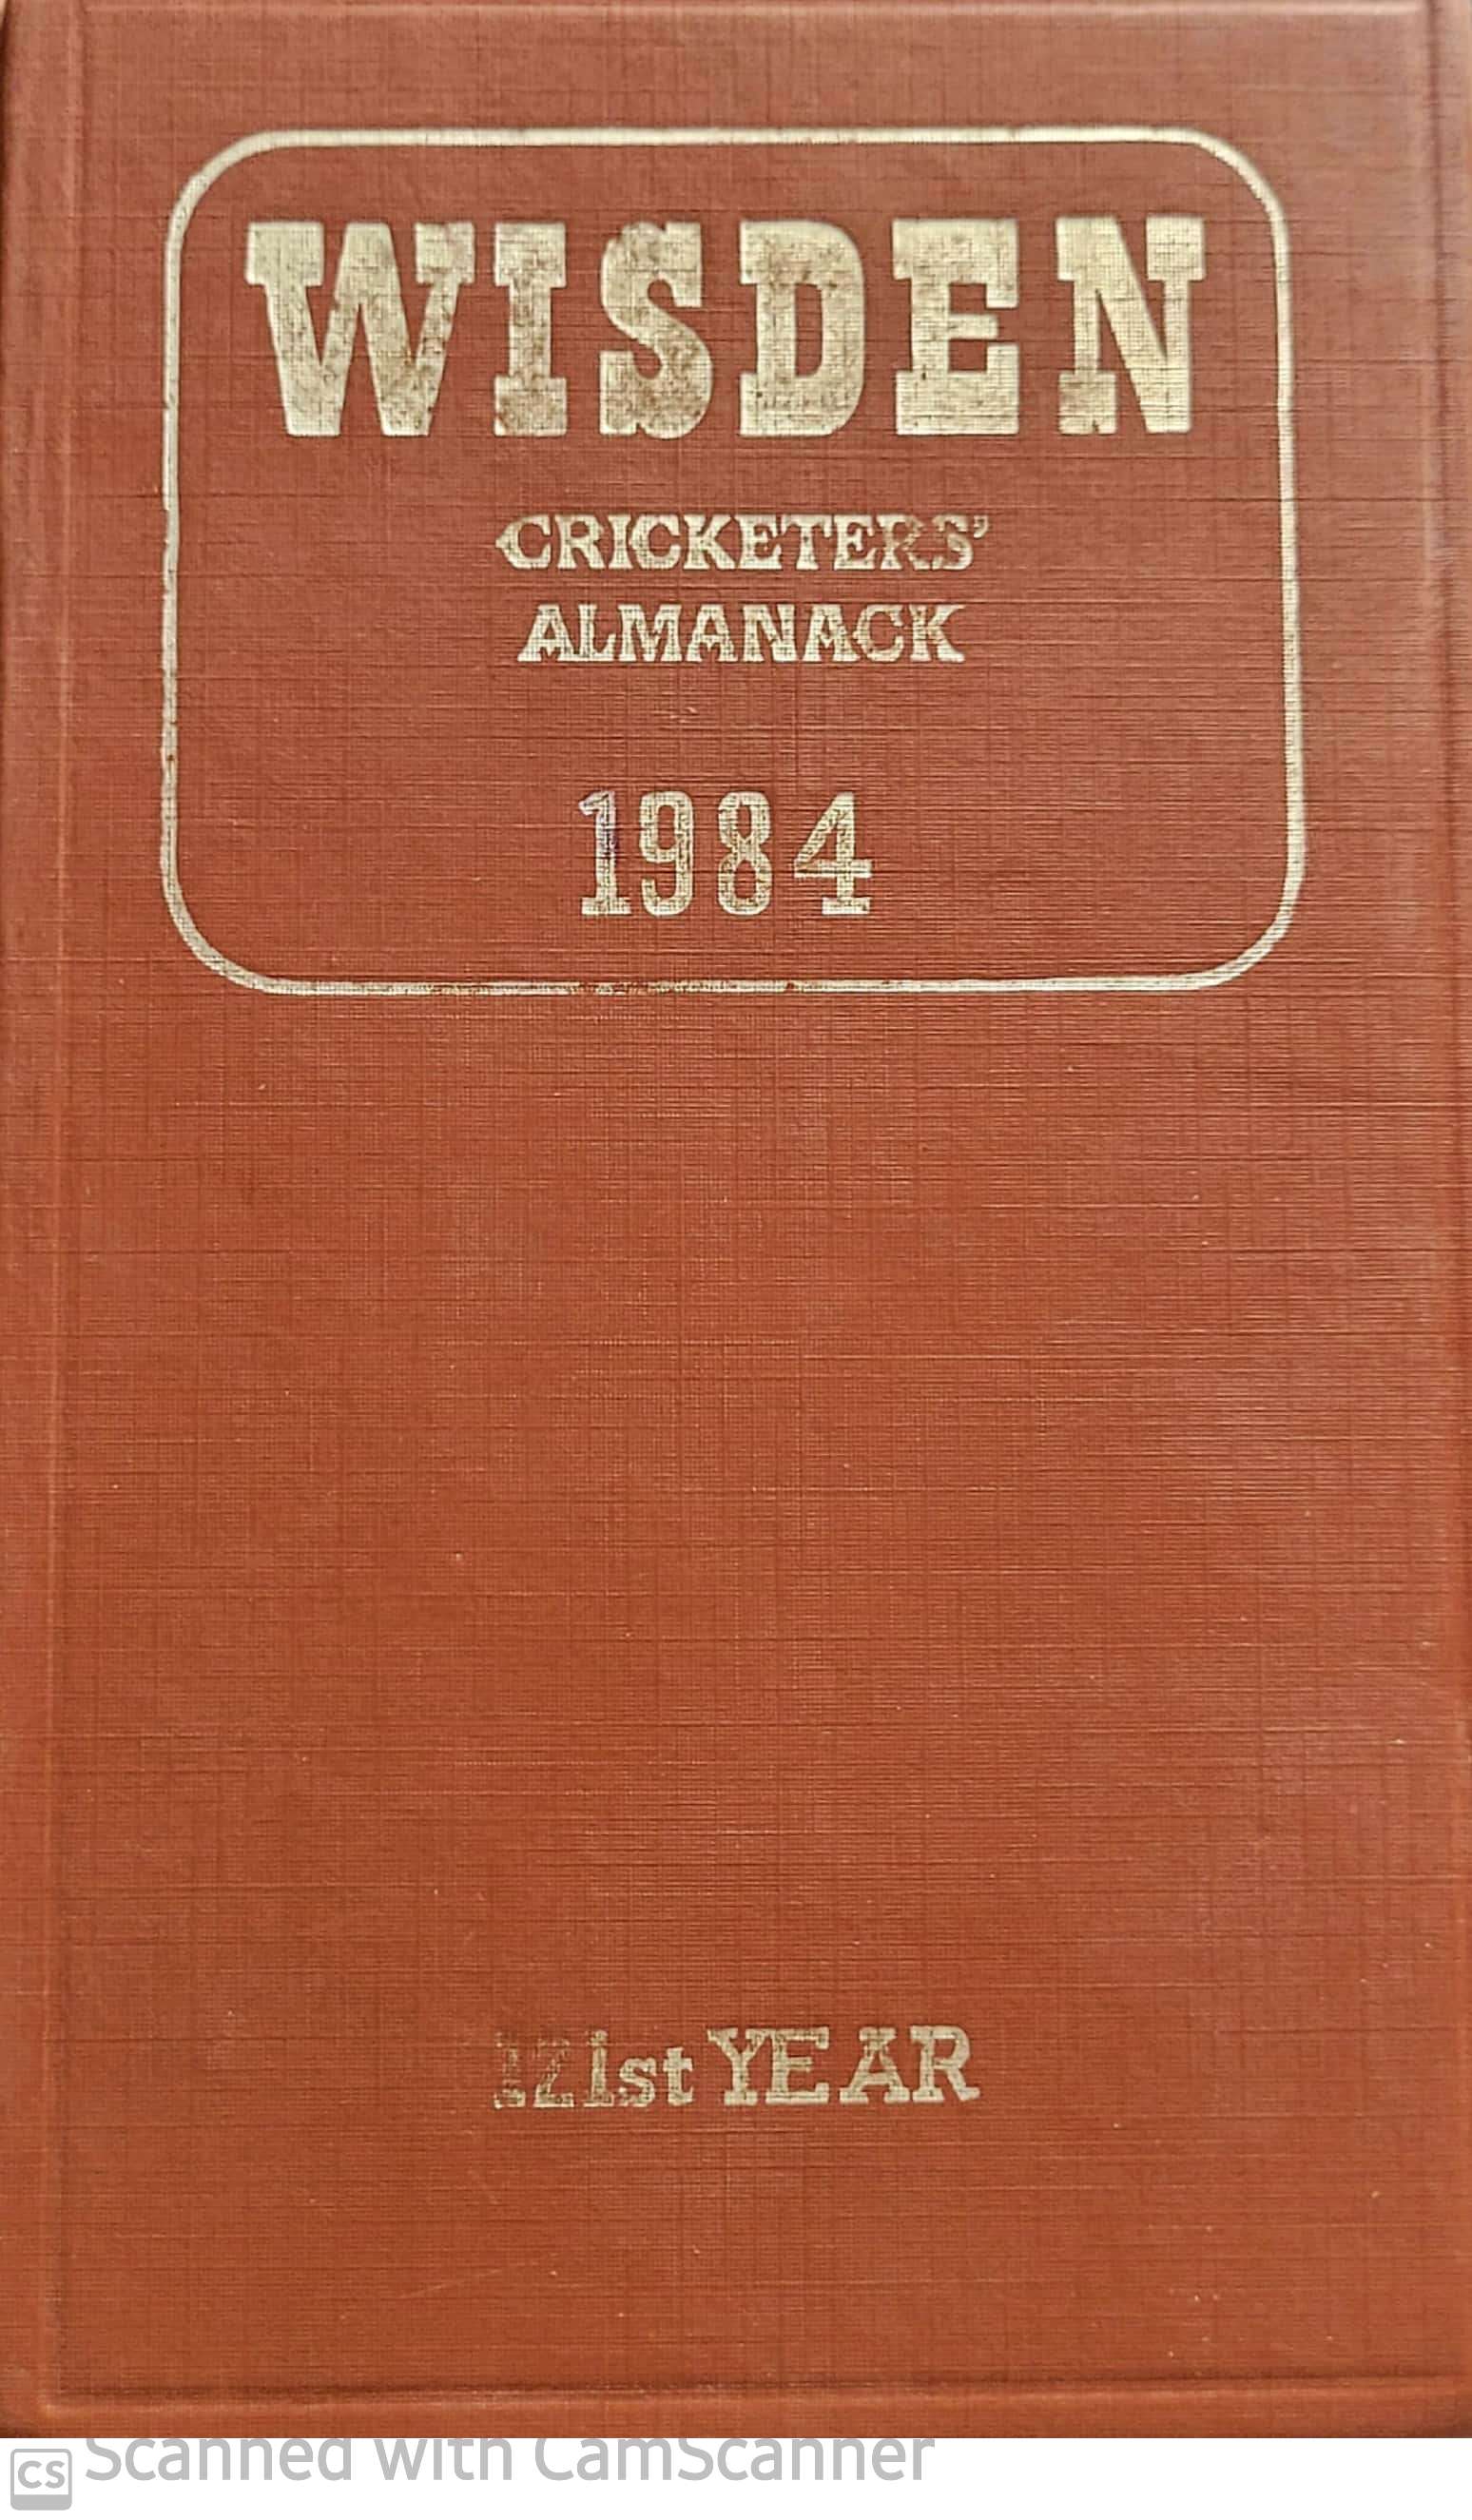 wisden cricketer's almanack 1984